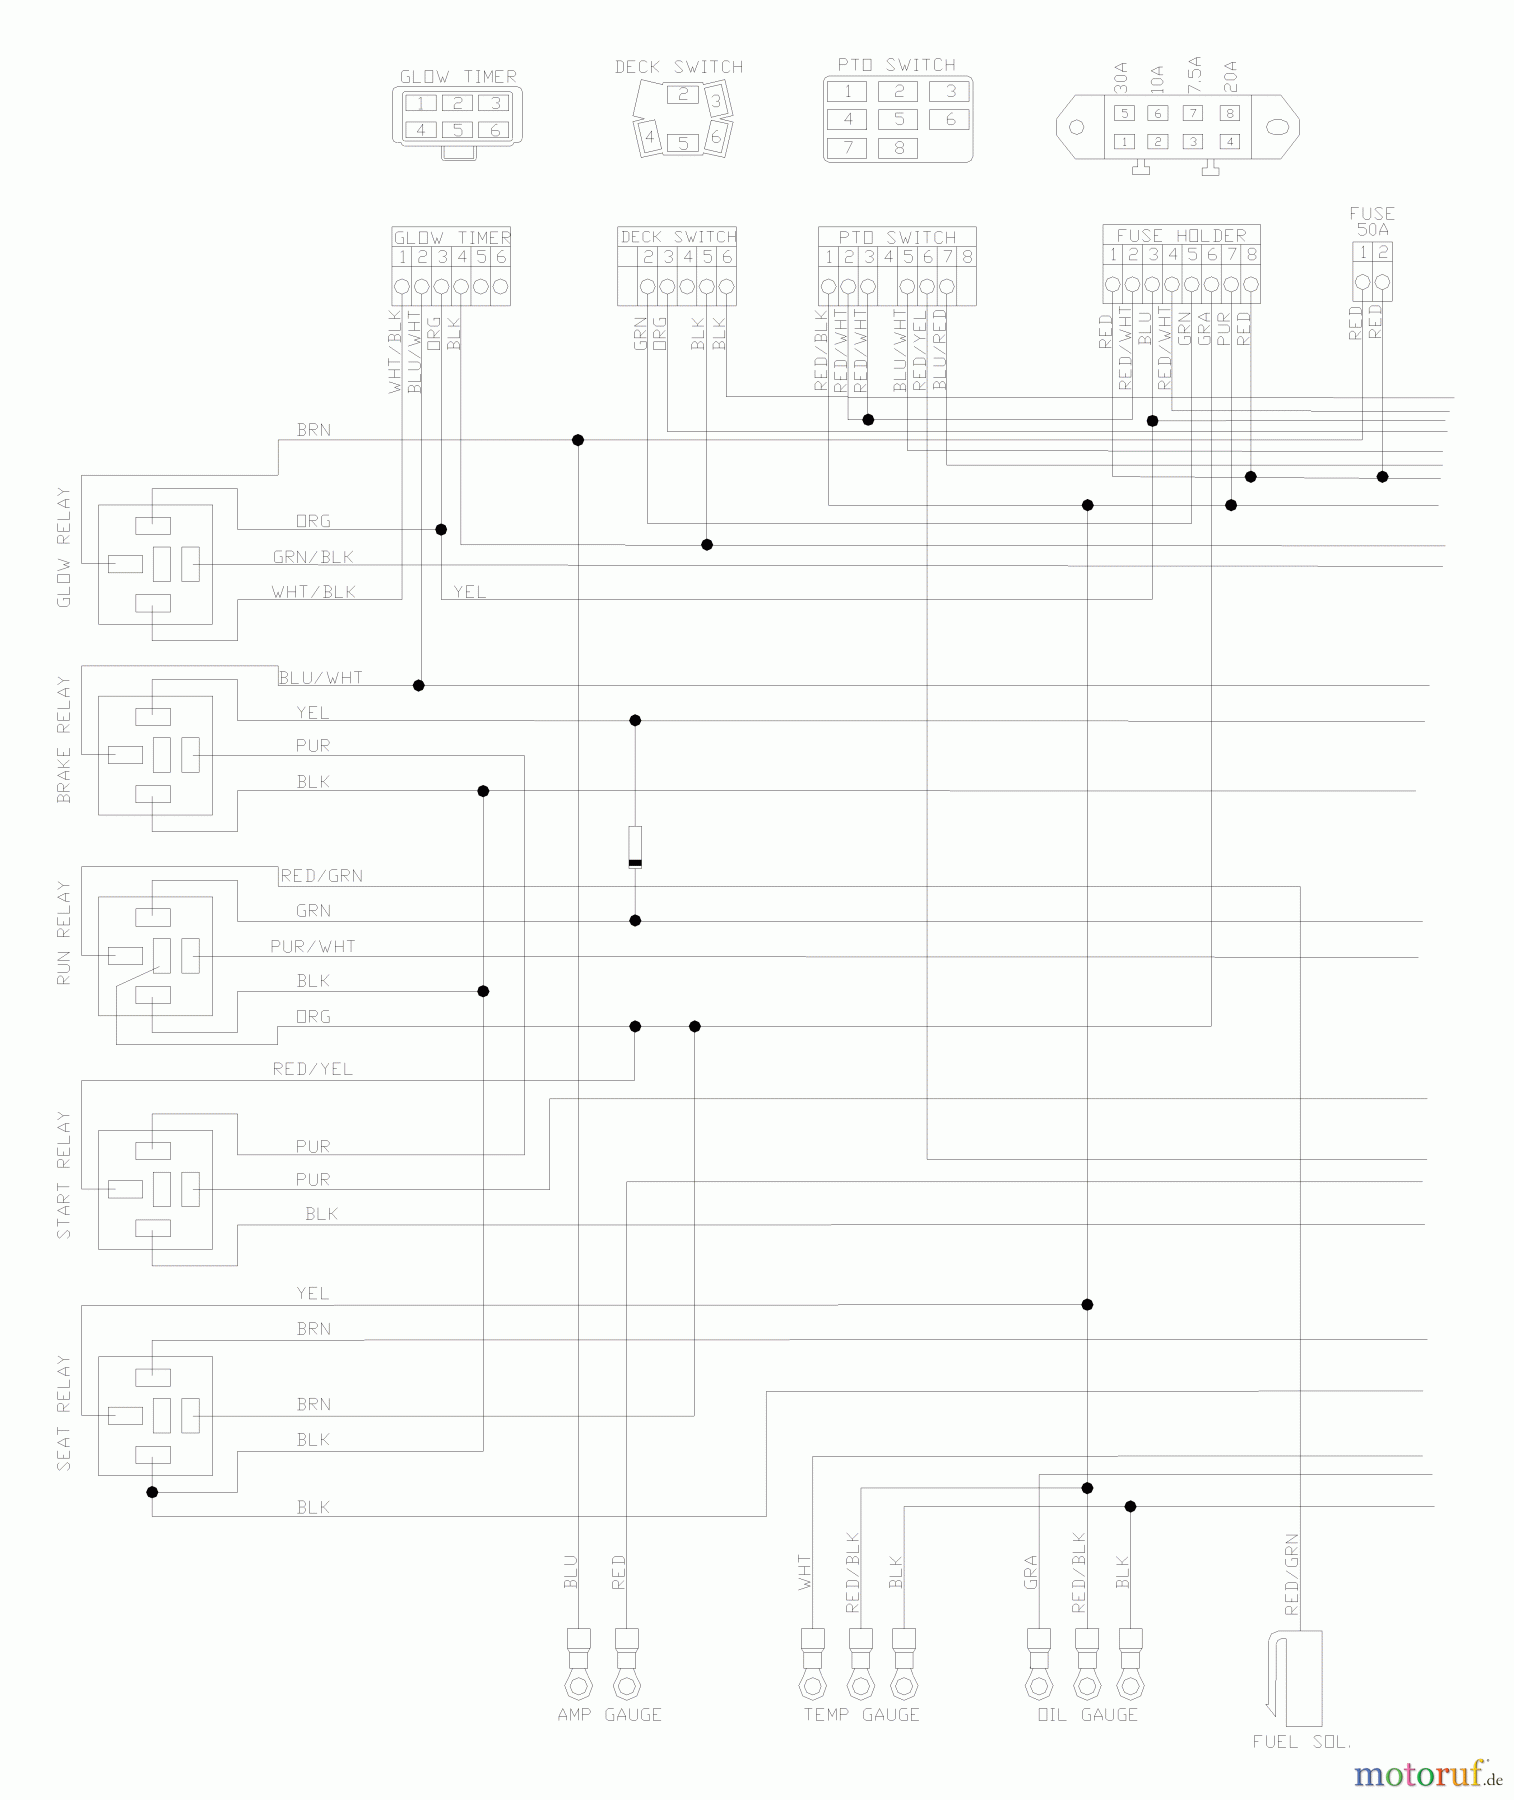  Husqvarna Nullwendekreismäher, Zero-Turn BZ 7234 D (968999216) - Husqvarna Zero-Turn Mower (2004-11 & After) (SN: 033600000 & Up) Wiring Schematic (Part 1)